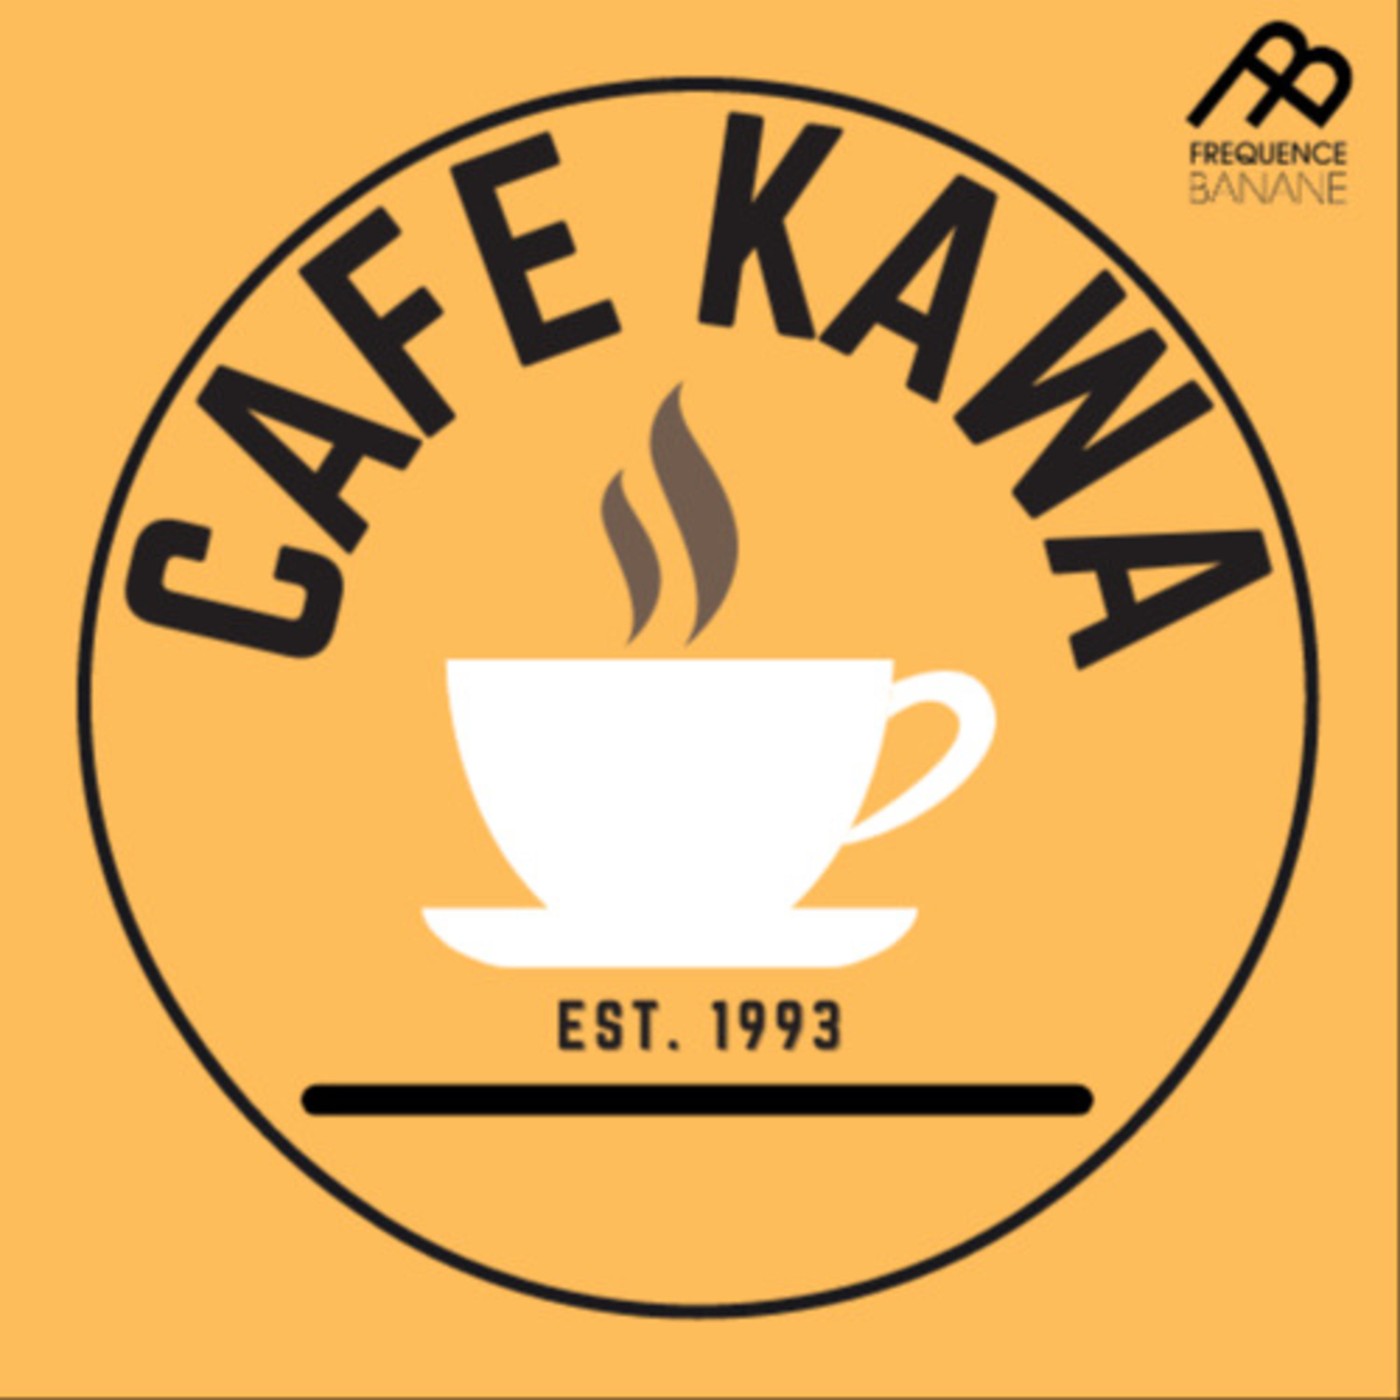 Café Kawa – The sublime Yellows